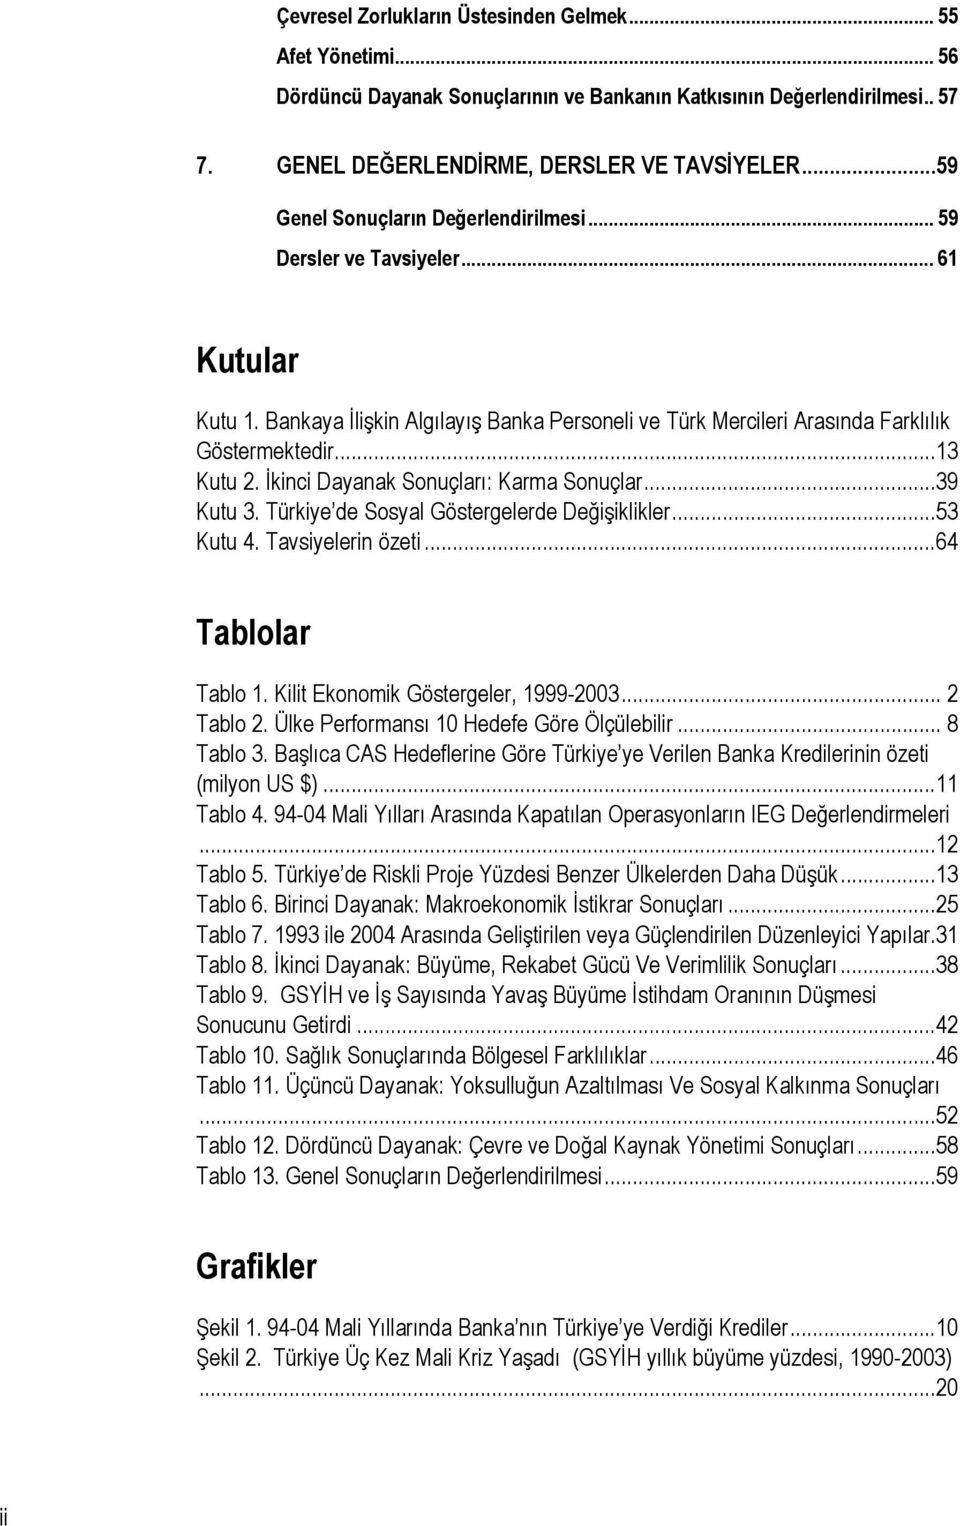 İkinci Dayanak Sonuçları: Karma Sonuçlar...39 Kutu 3. Türkiye de Sosyal Göstergelerde Değişiklikler...53 Kutu 4. Tavsiyelerin özeti...64 Tablolar Tablo 1. Kilit Ekonomik Göstergeler, 1999-2003.